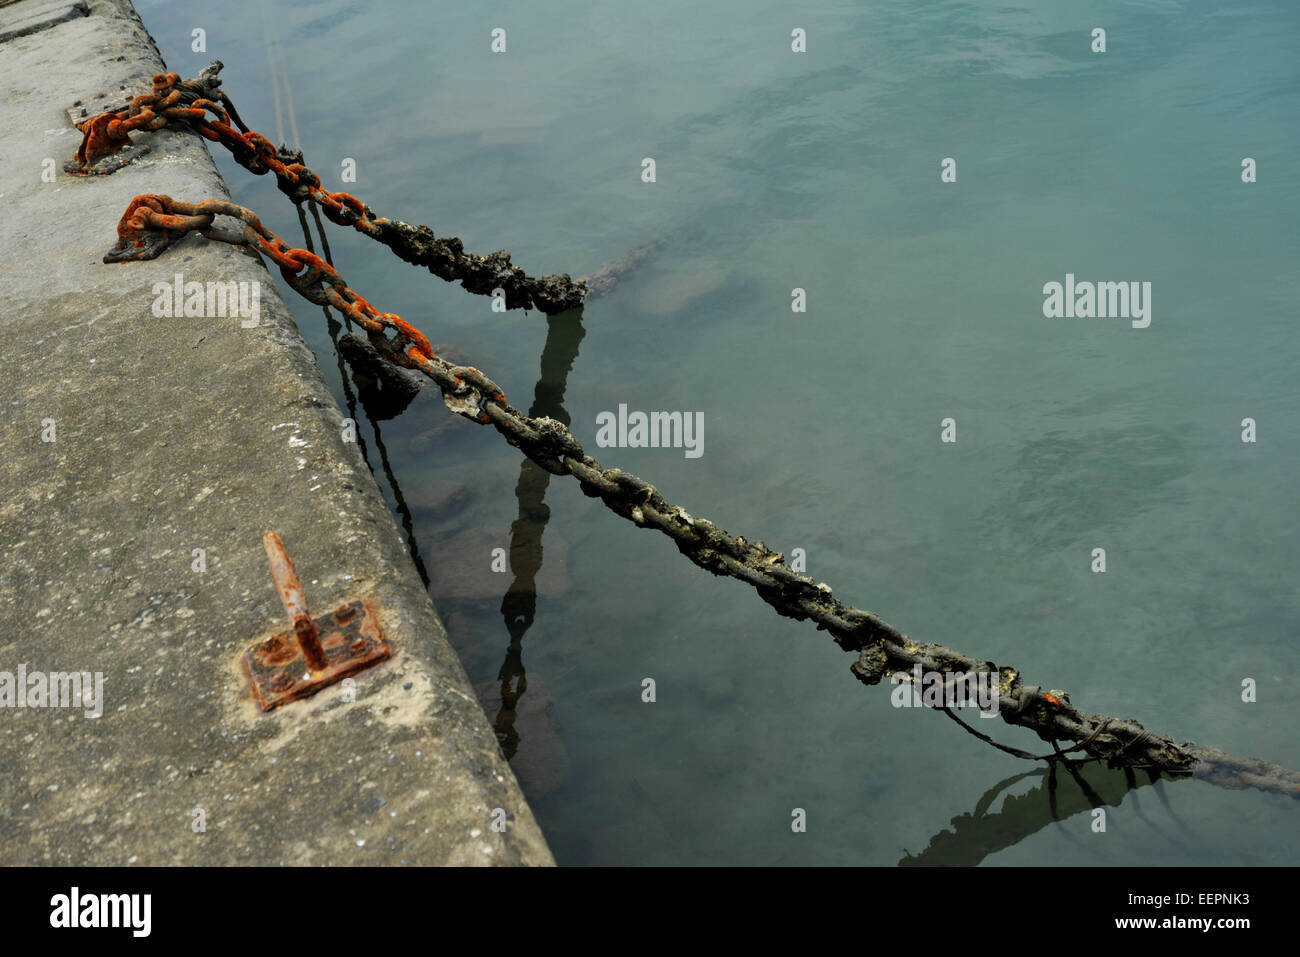 Atmosphärische Szene von zwei rostige verschmutzte Ketten zu Dock Seite in Hafen Wasser hängenden gesichert Stilleben abstrakte Konzepte Stockfoto